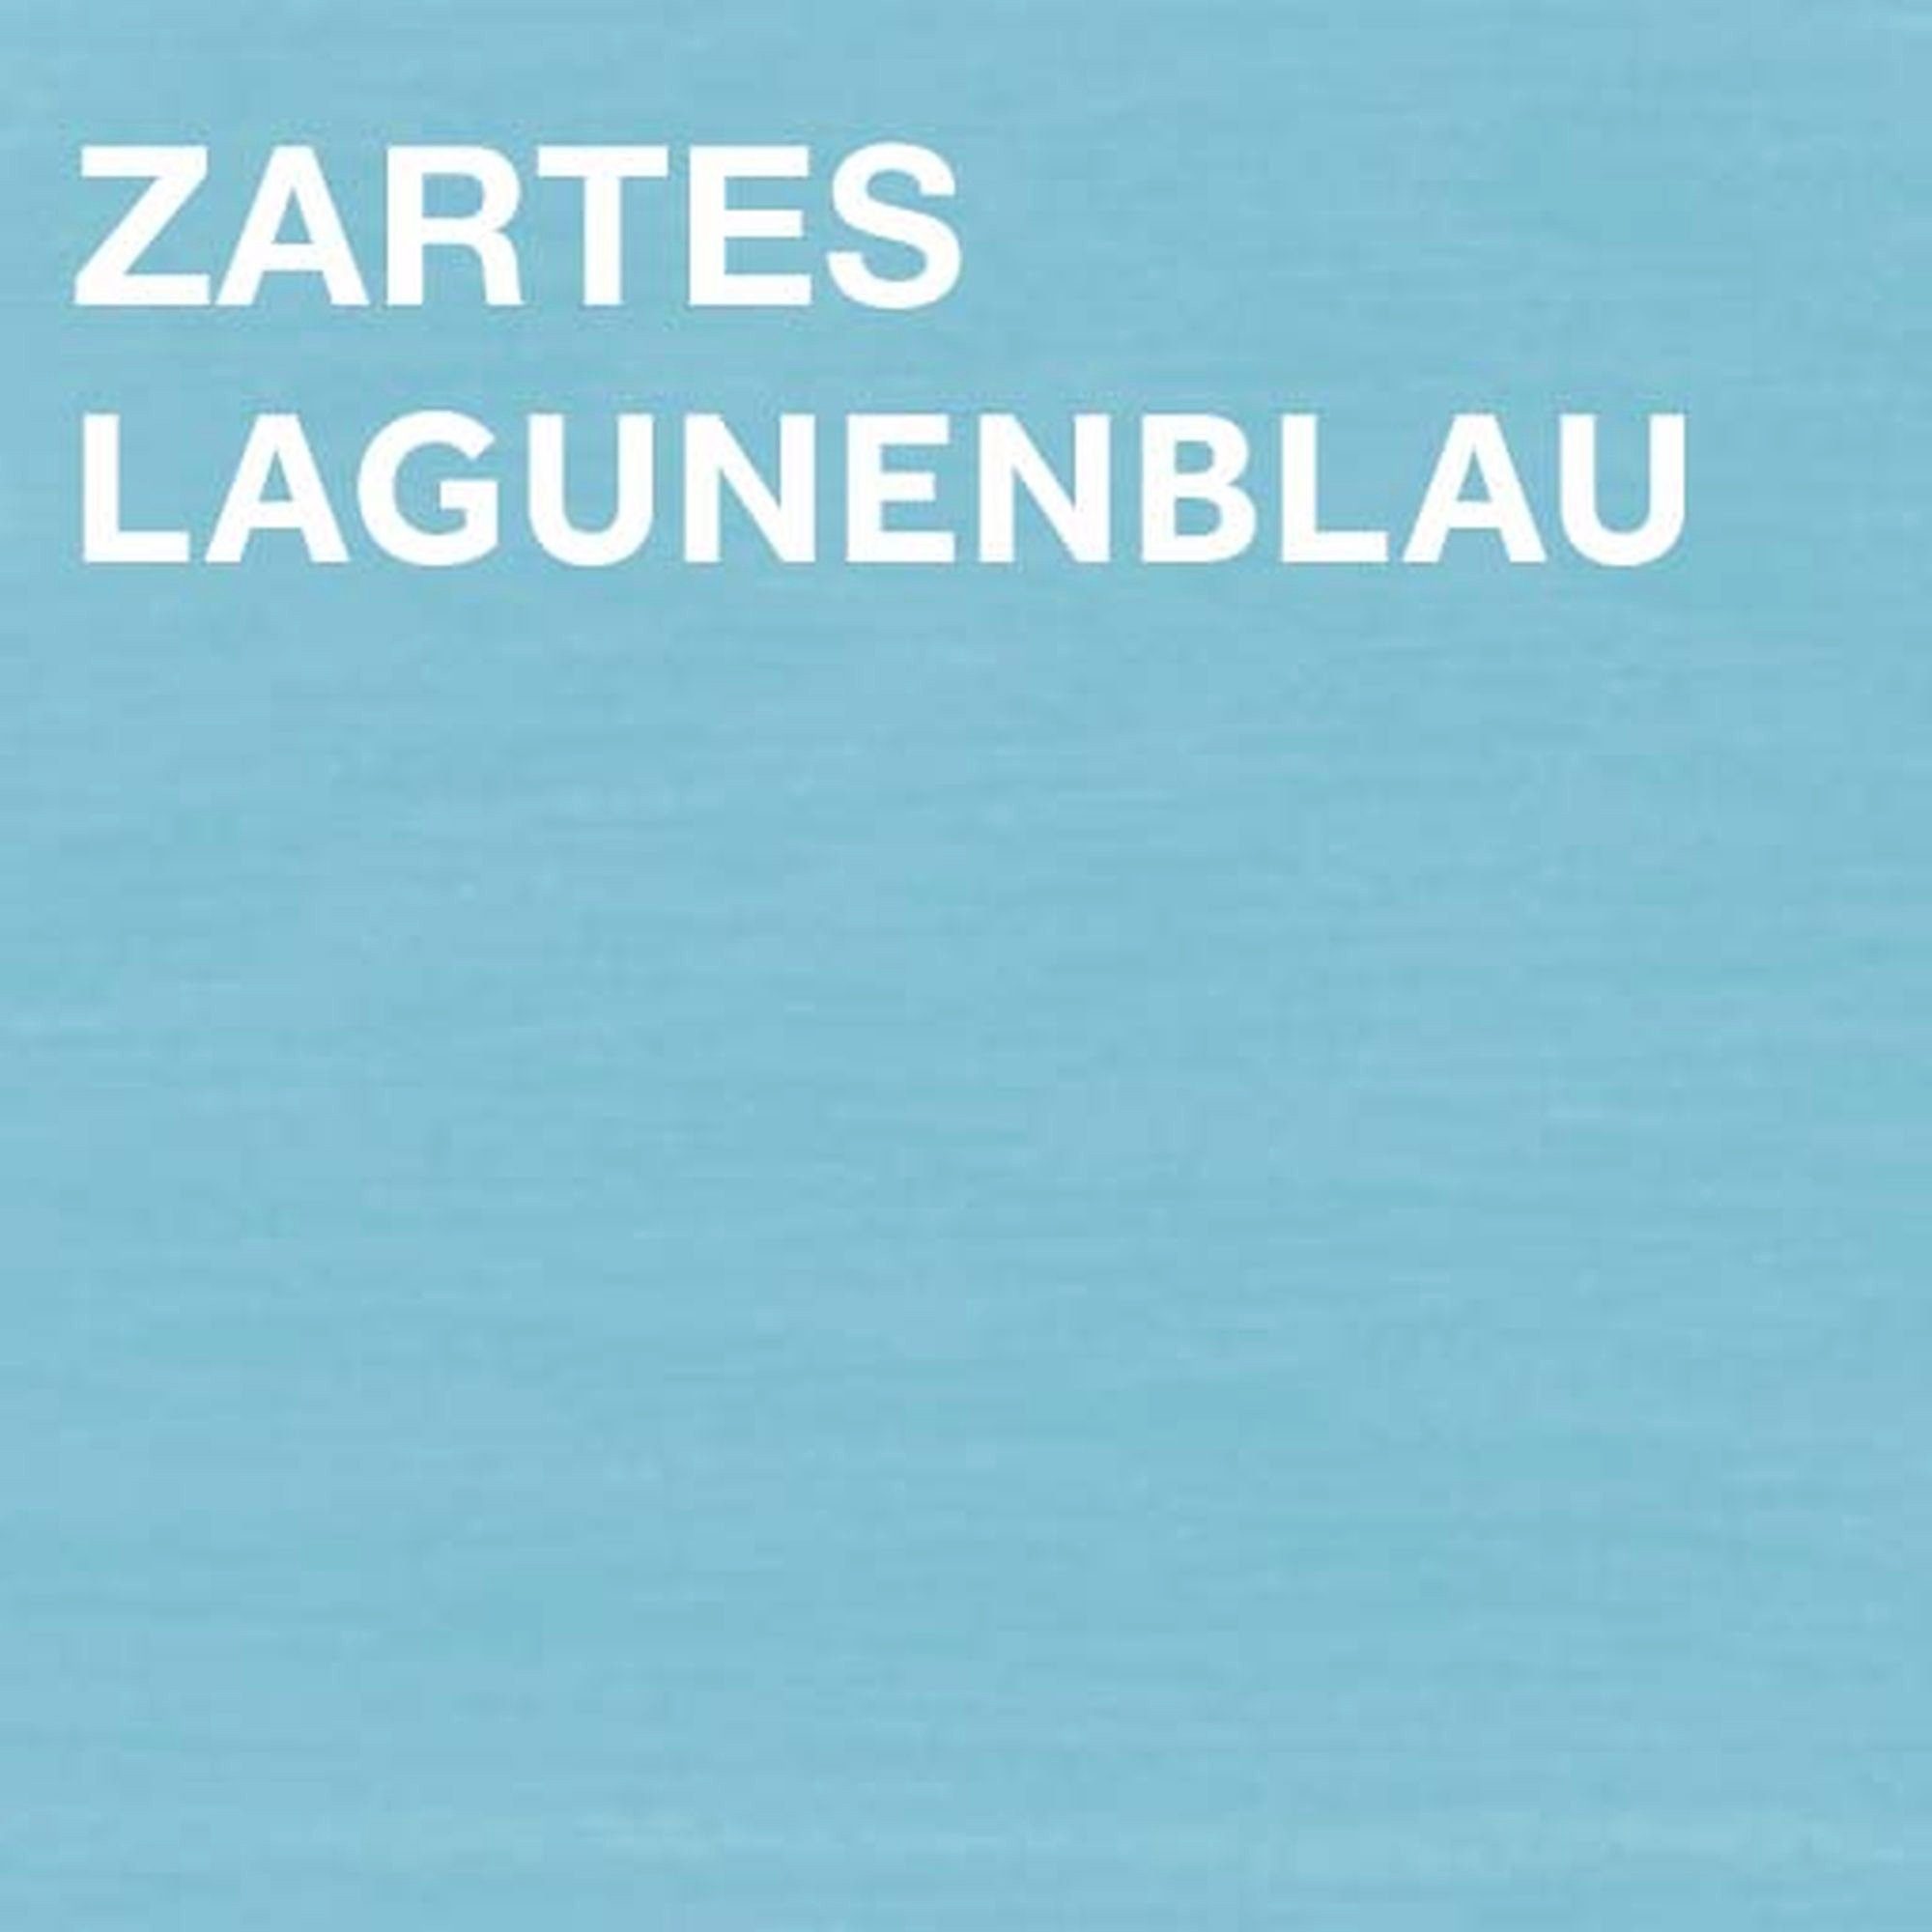 Liter Zartes Inhalt COLORS GARDEN Lagunenblau, Spray, 0,4 Wetterschutzfarbe Bondex